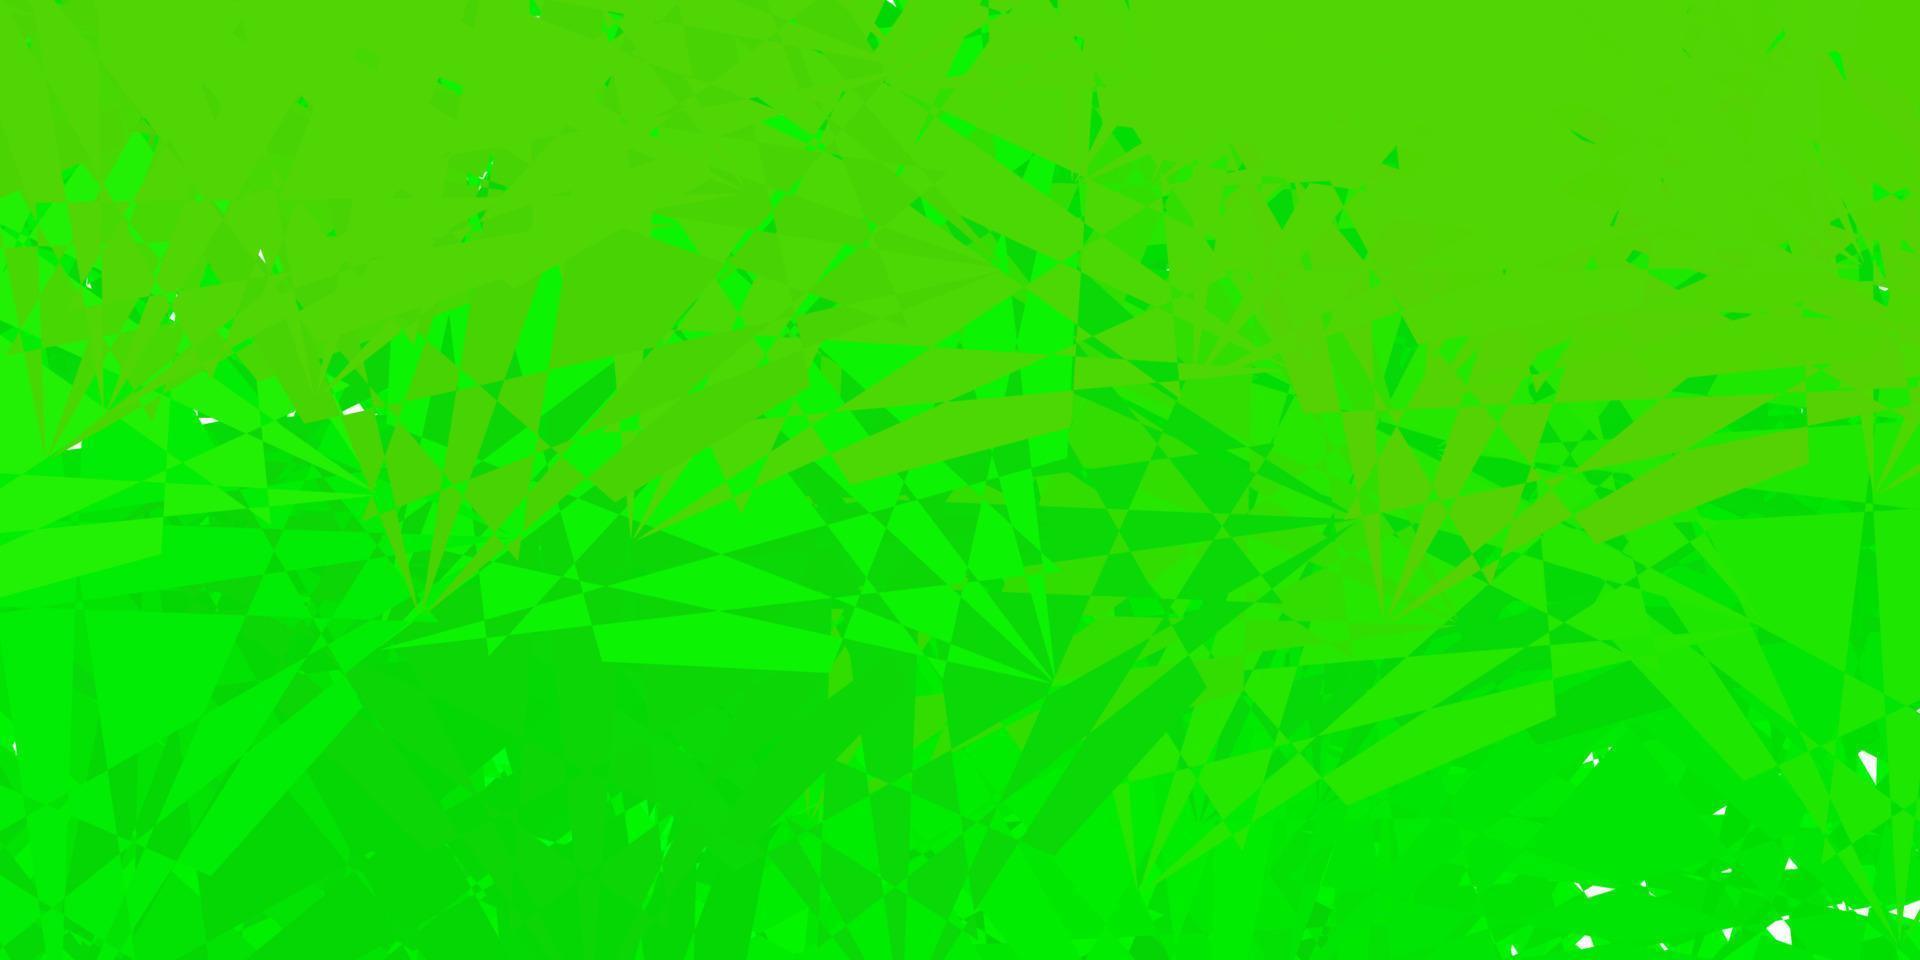 mörkgrön, gul vektorbakgrund med polygonala former. vektor